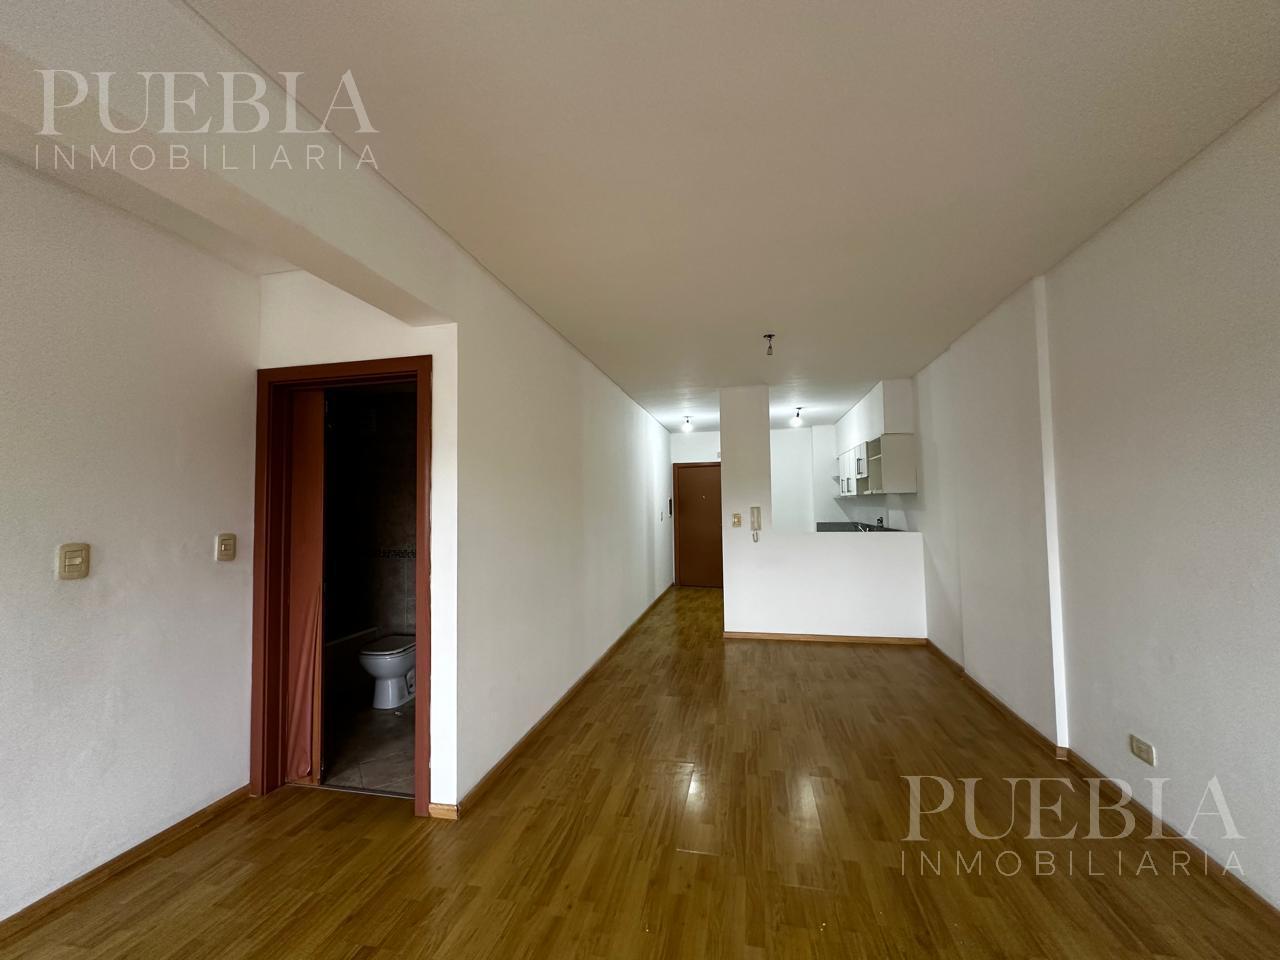 #5310162 | Rental | Office | Parque Patricios (Puebla Inmobiliara)